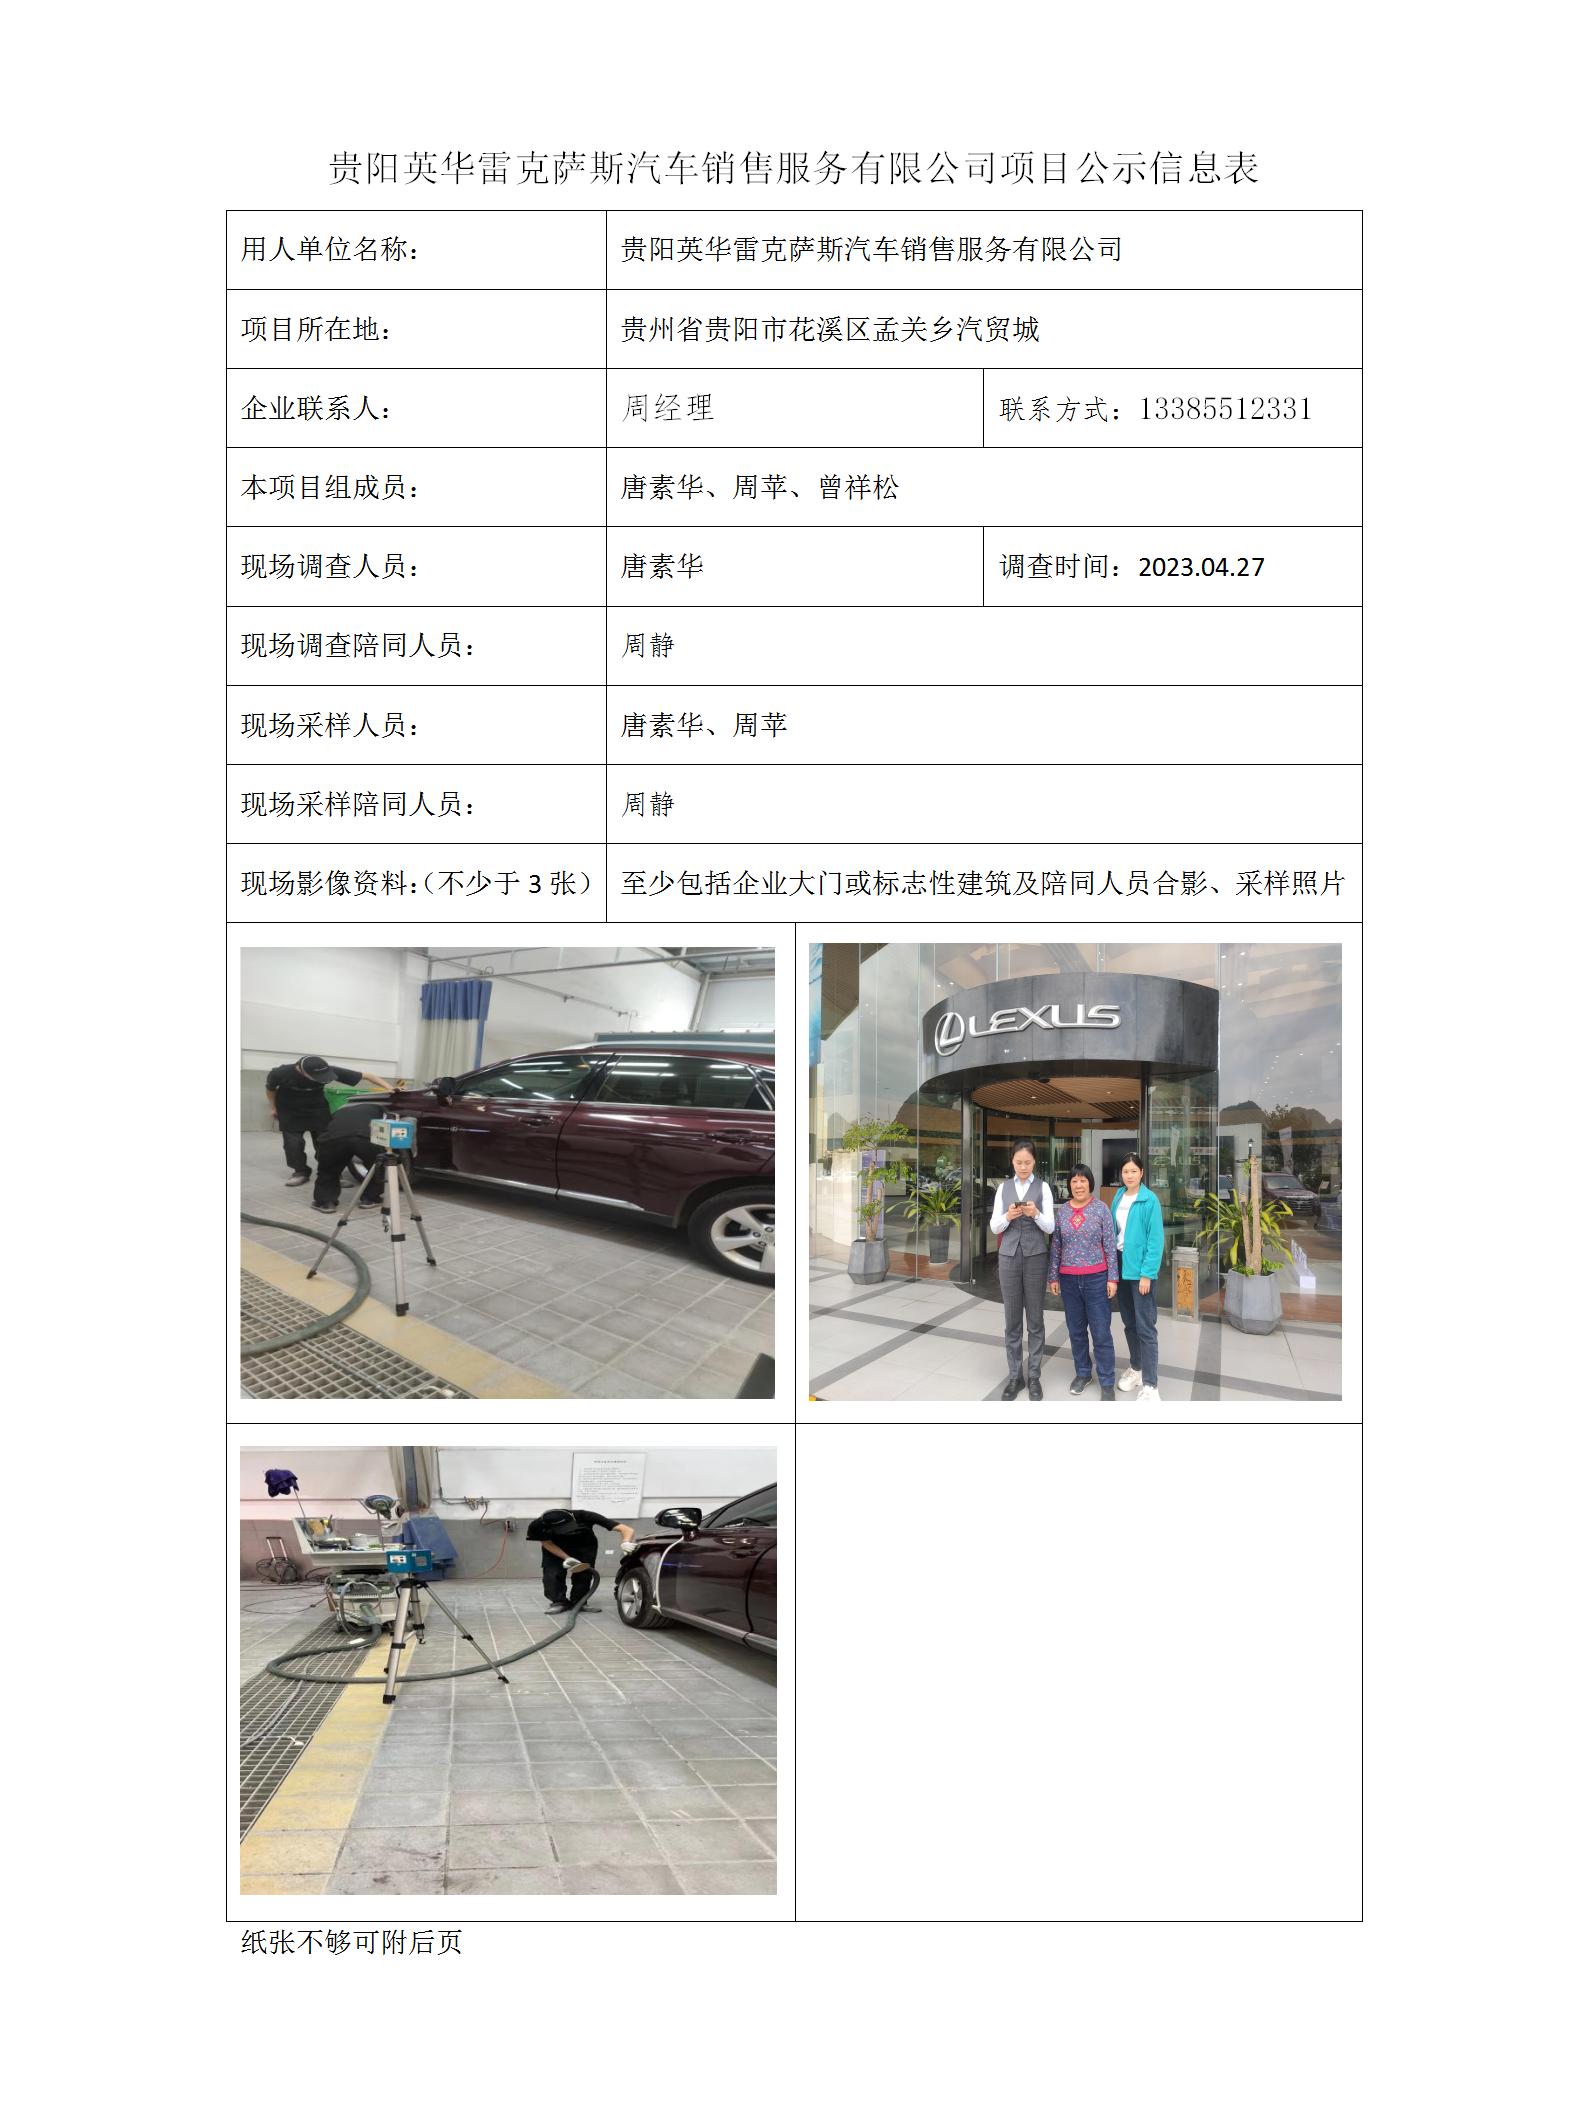 贵阳英华雷克萨斯汽车销售服务有限公司项目公示信息表_01.jpg